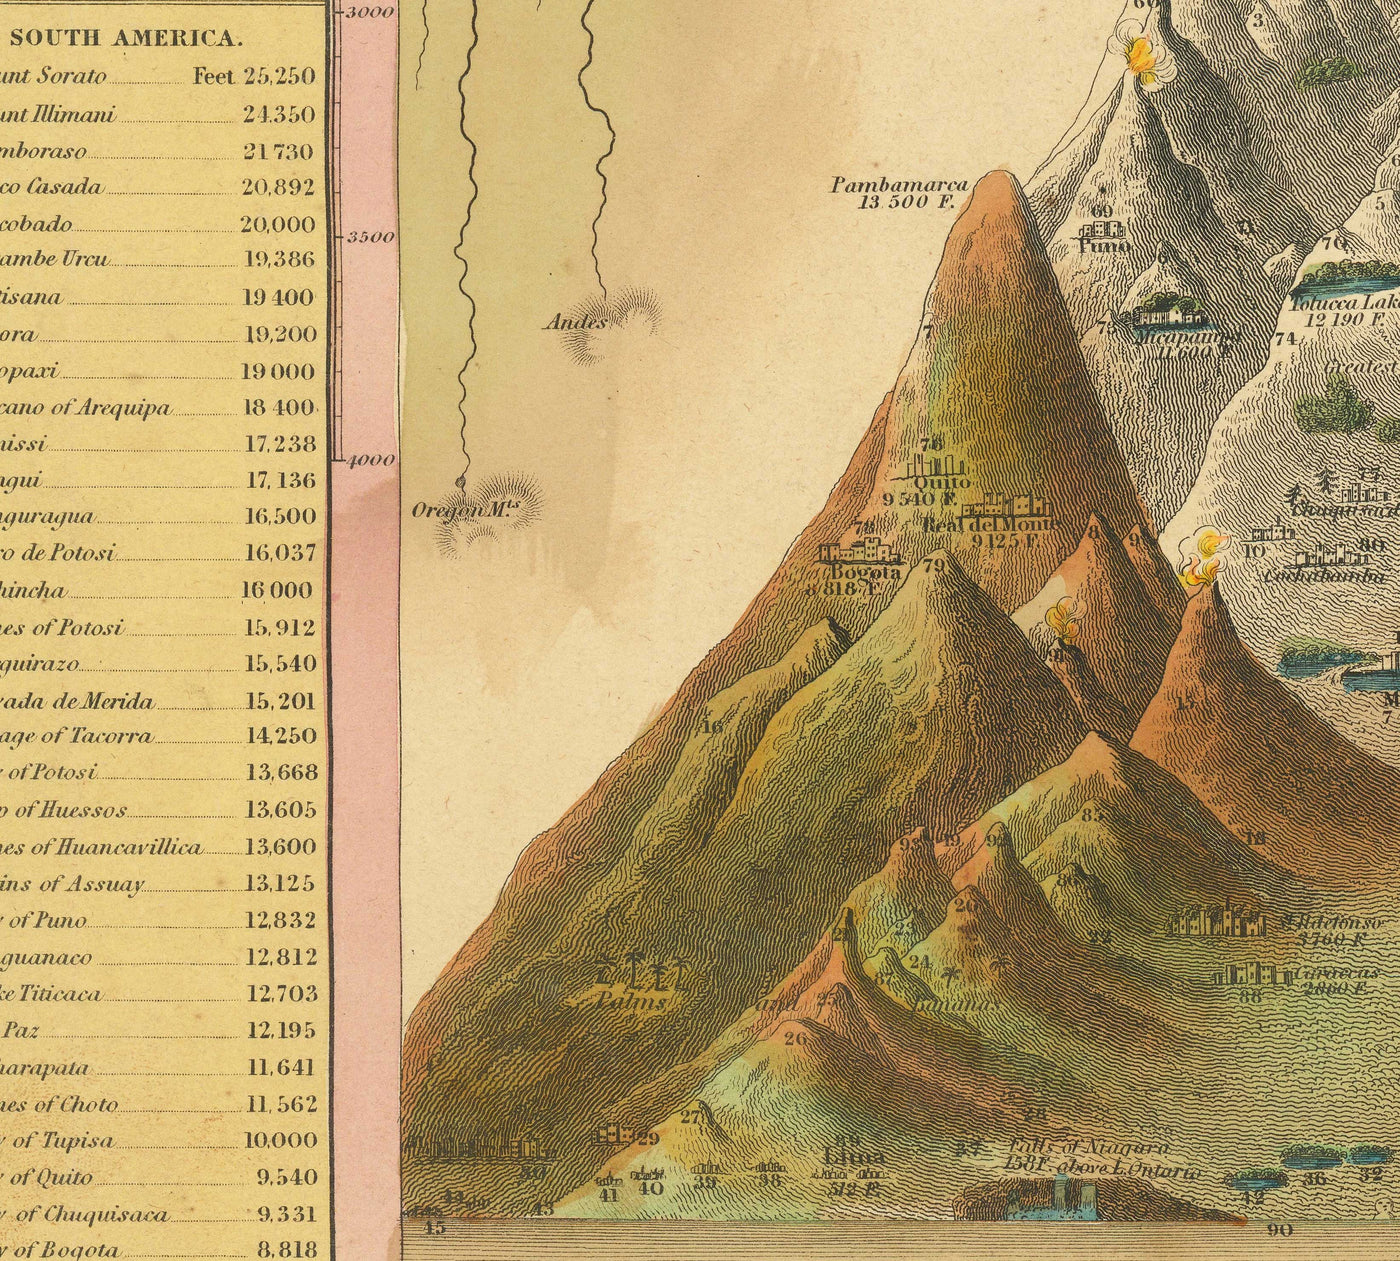 Antiguo mapa de los ríos y montañas del mundo, 1849 por Samuel Augustus Mitchell - Nilo, Mississippi, Monte Sorato, Monte Blanco, No Monte Everest